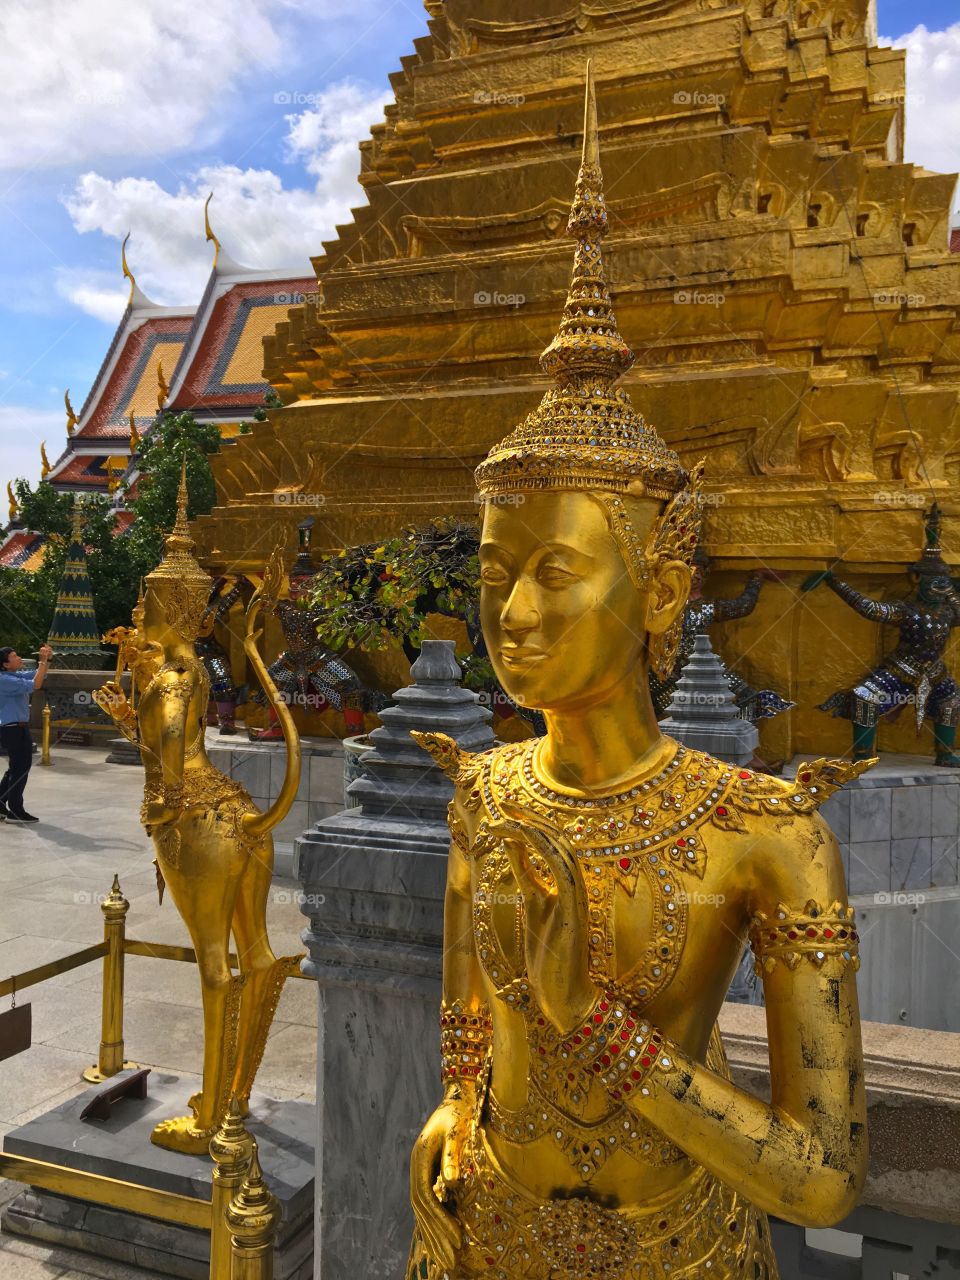 Grand Palace / Bangkok Thailand 55